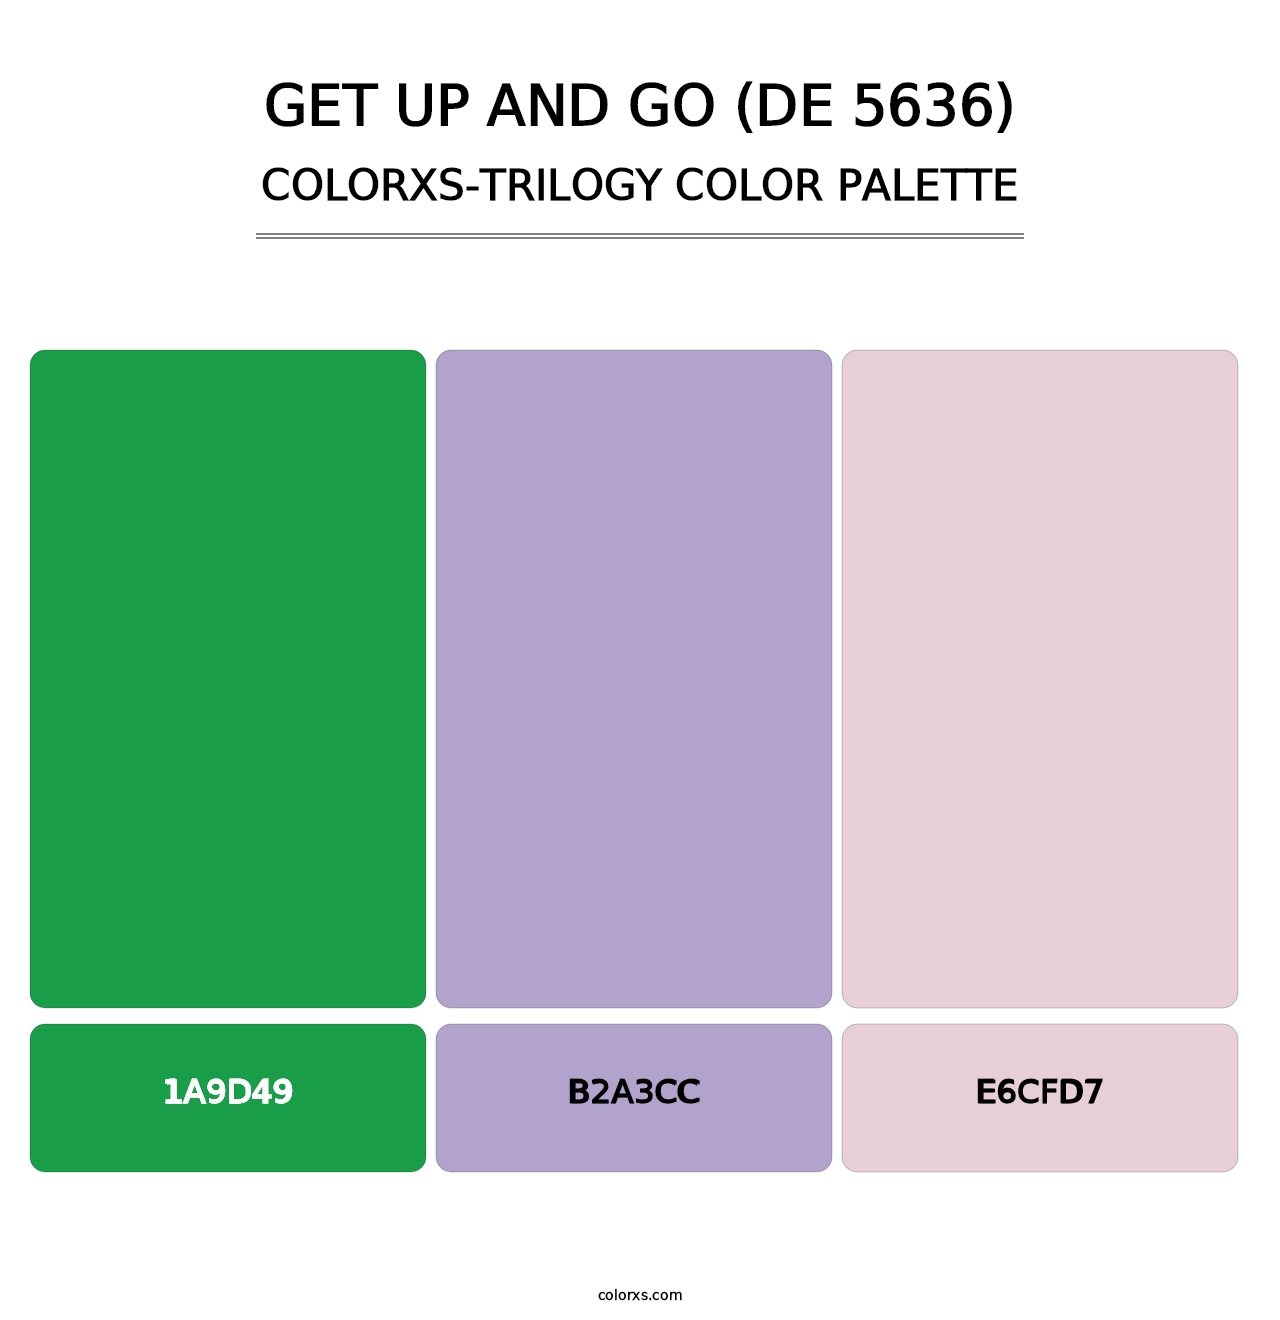 Get Up and Go (DE 5636) - Colorxs Trilogy Palette